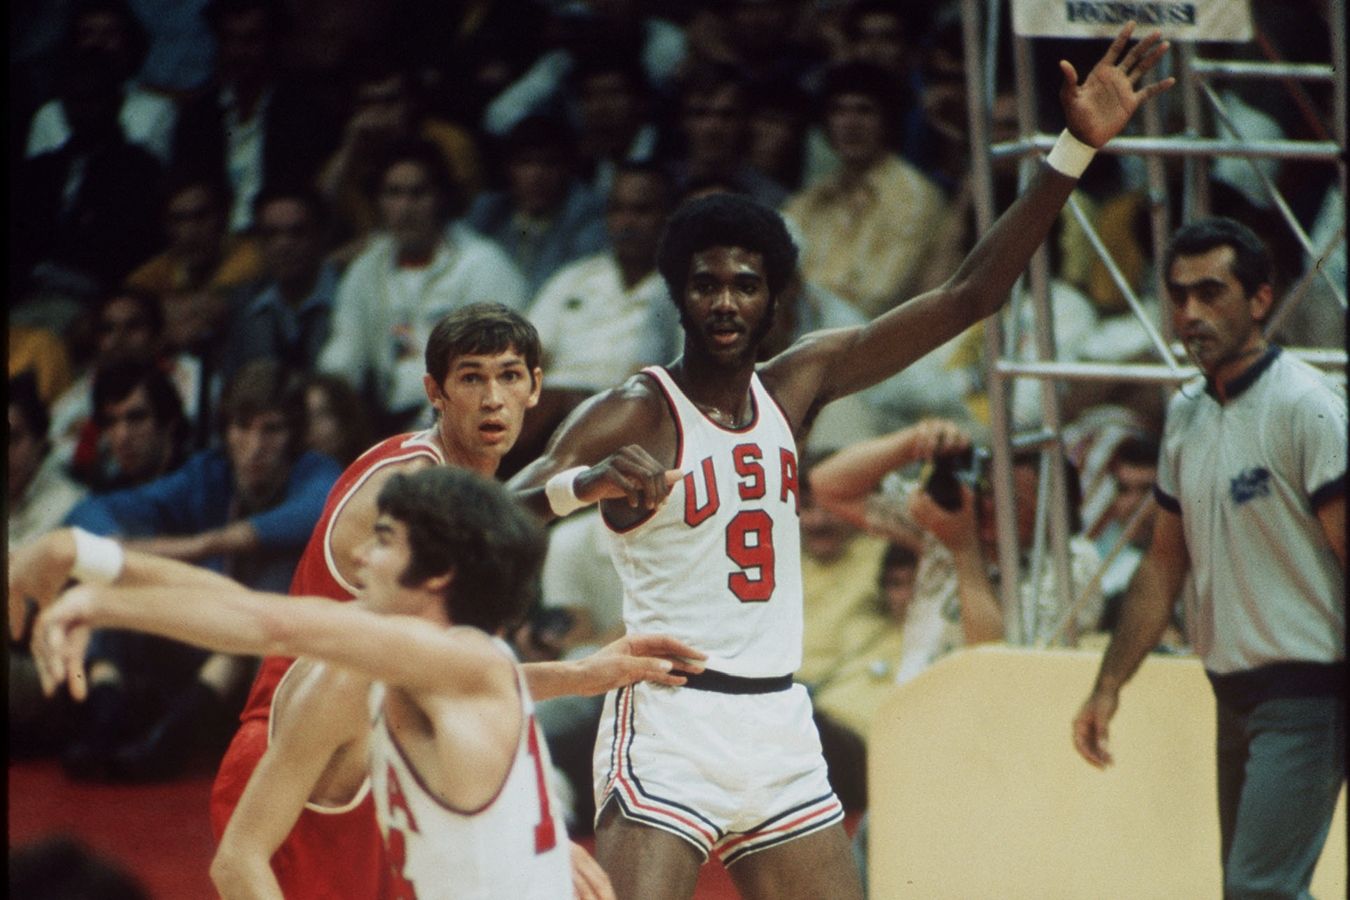 Игры 1972 баскетбол. Даг баскетболист 1972. Коллинз баскетболист 1972. Даг Коллинз баскетболист.